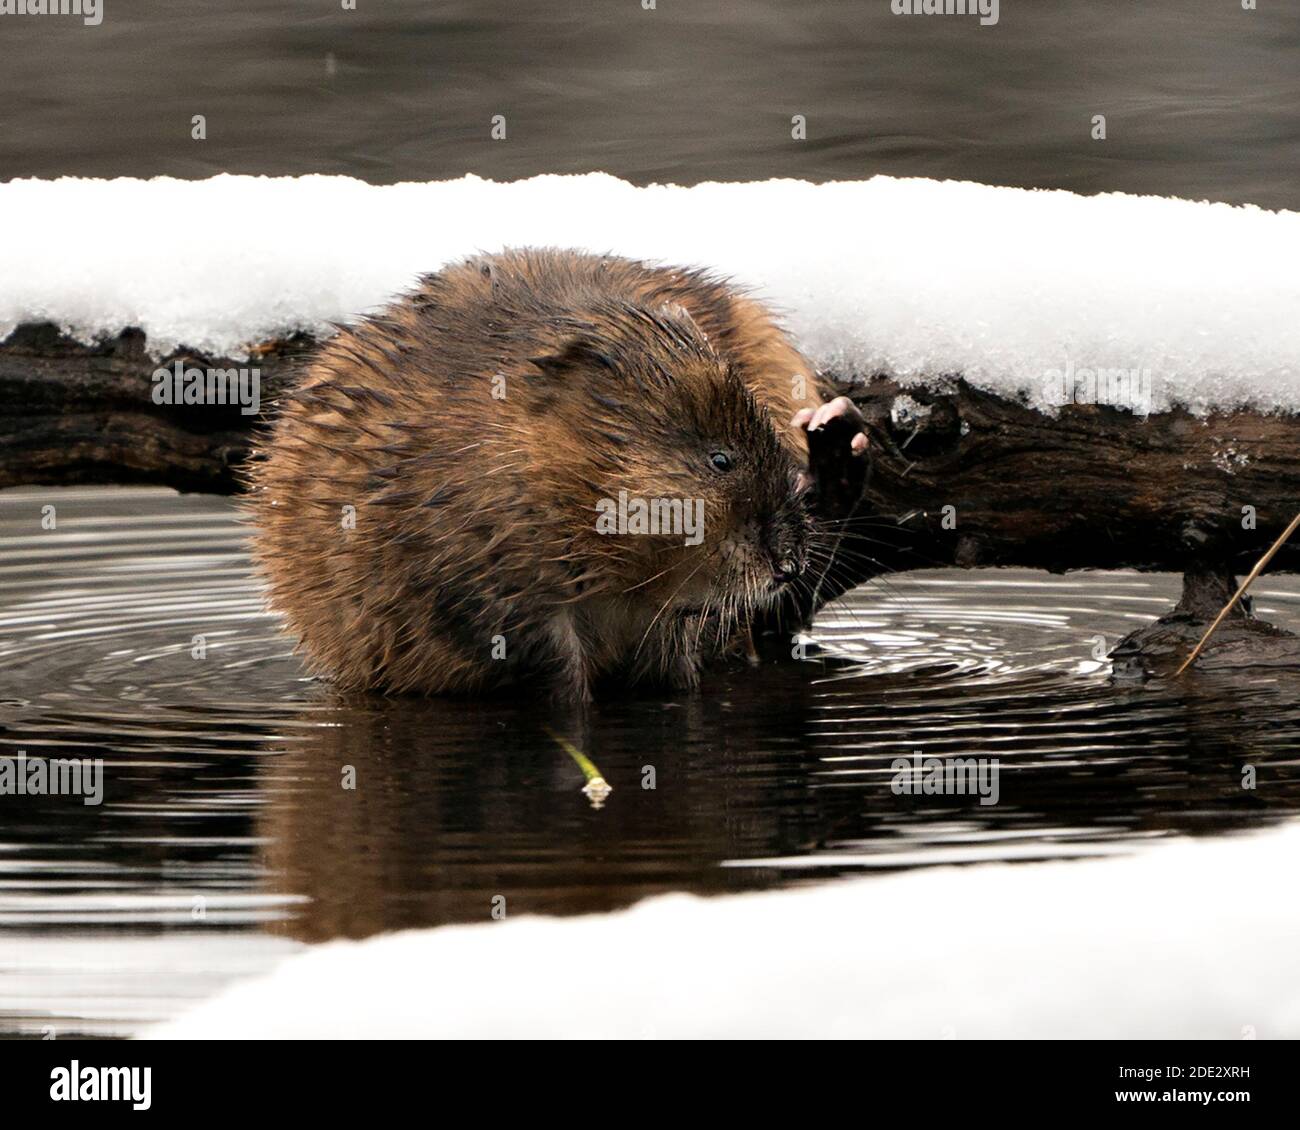 Muskrat in acqua mostra la sua pelliccia marrone da un ceppo con neve con un fondo d'acqua sfocato nel suo ambiente e habitat. Immagine. Immagine. Verticale Foto Stock